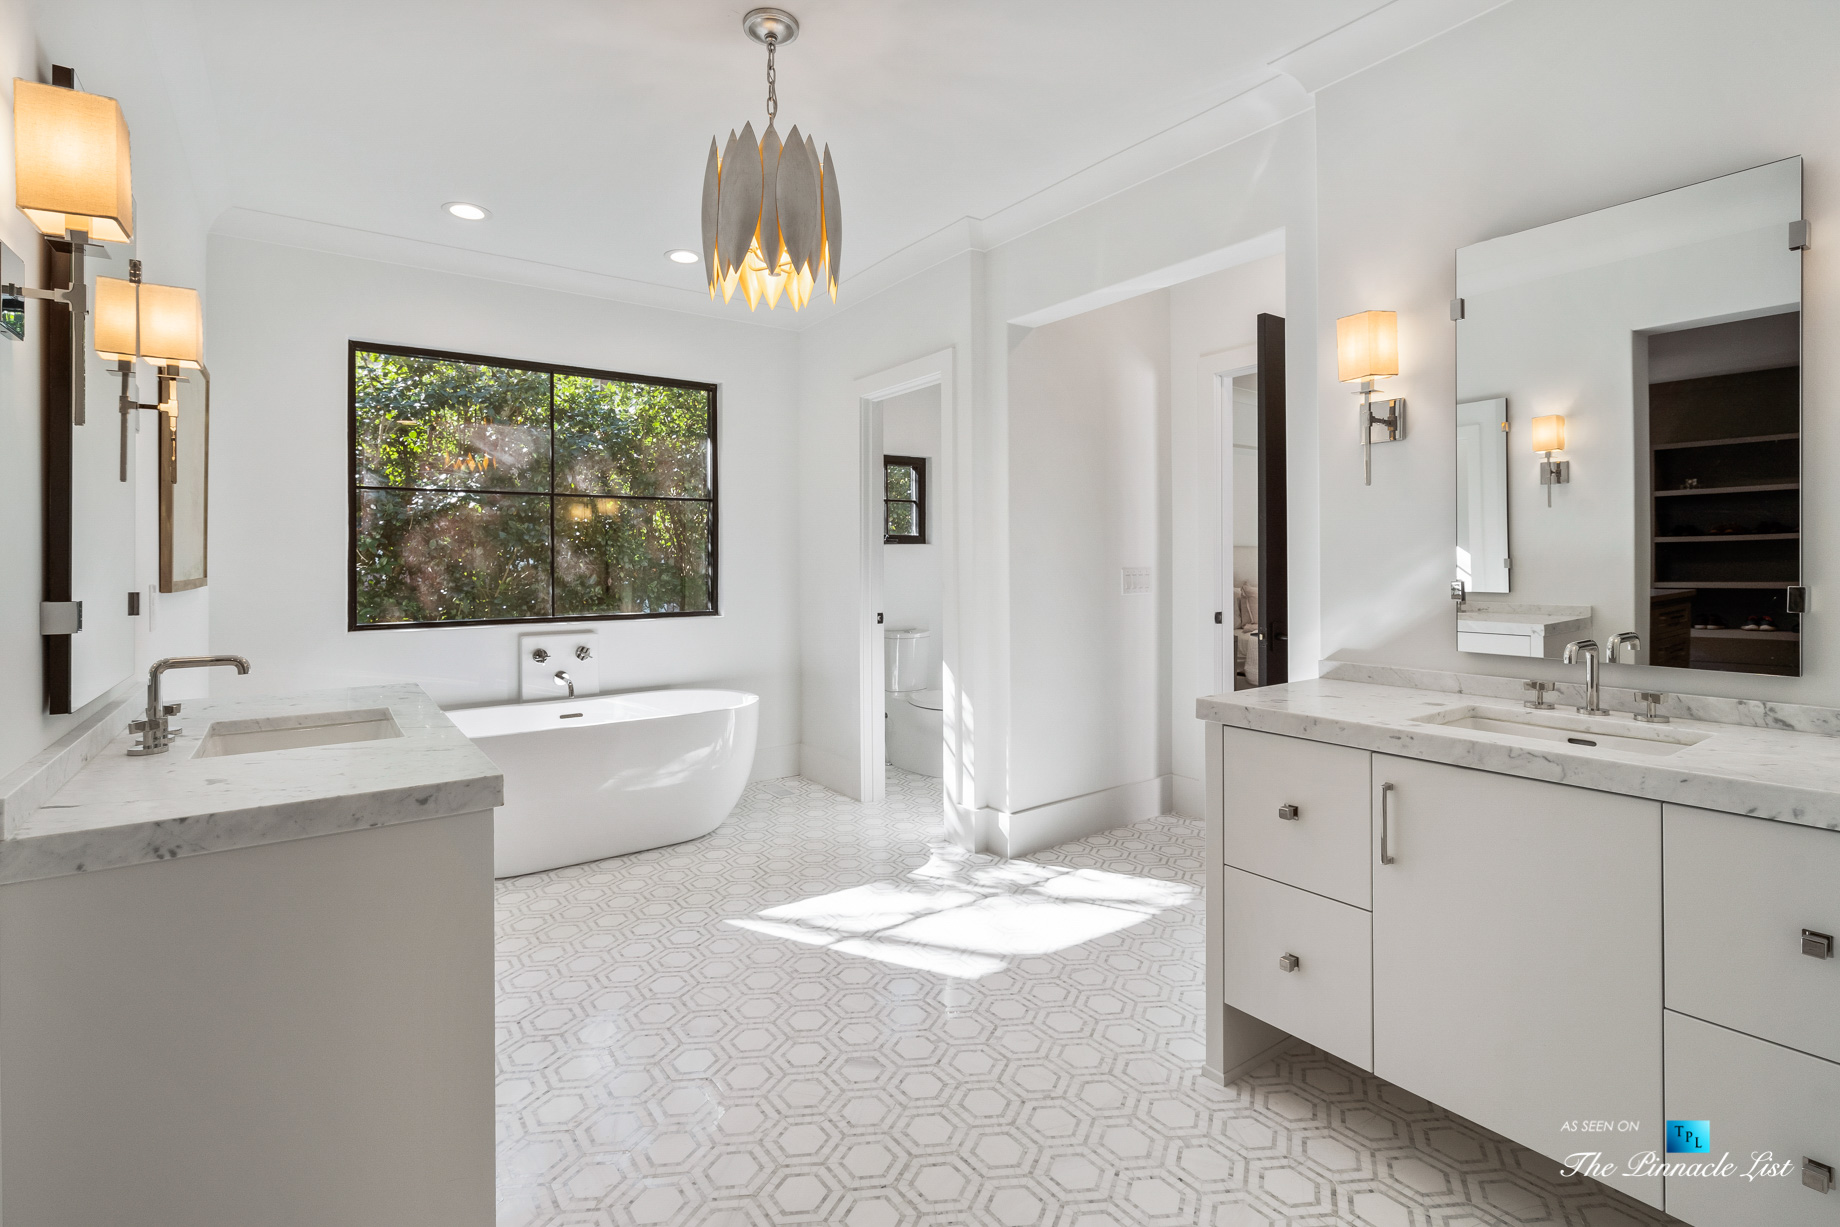 447 Valley Rd NW, Atlanta, GA, USA - Master Bathroom - Luxury Real Estate - Tuxedo Park Home